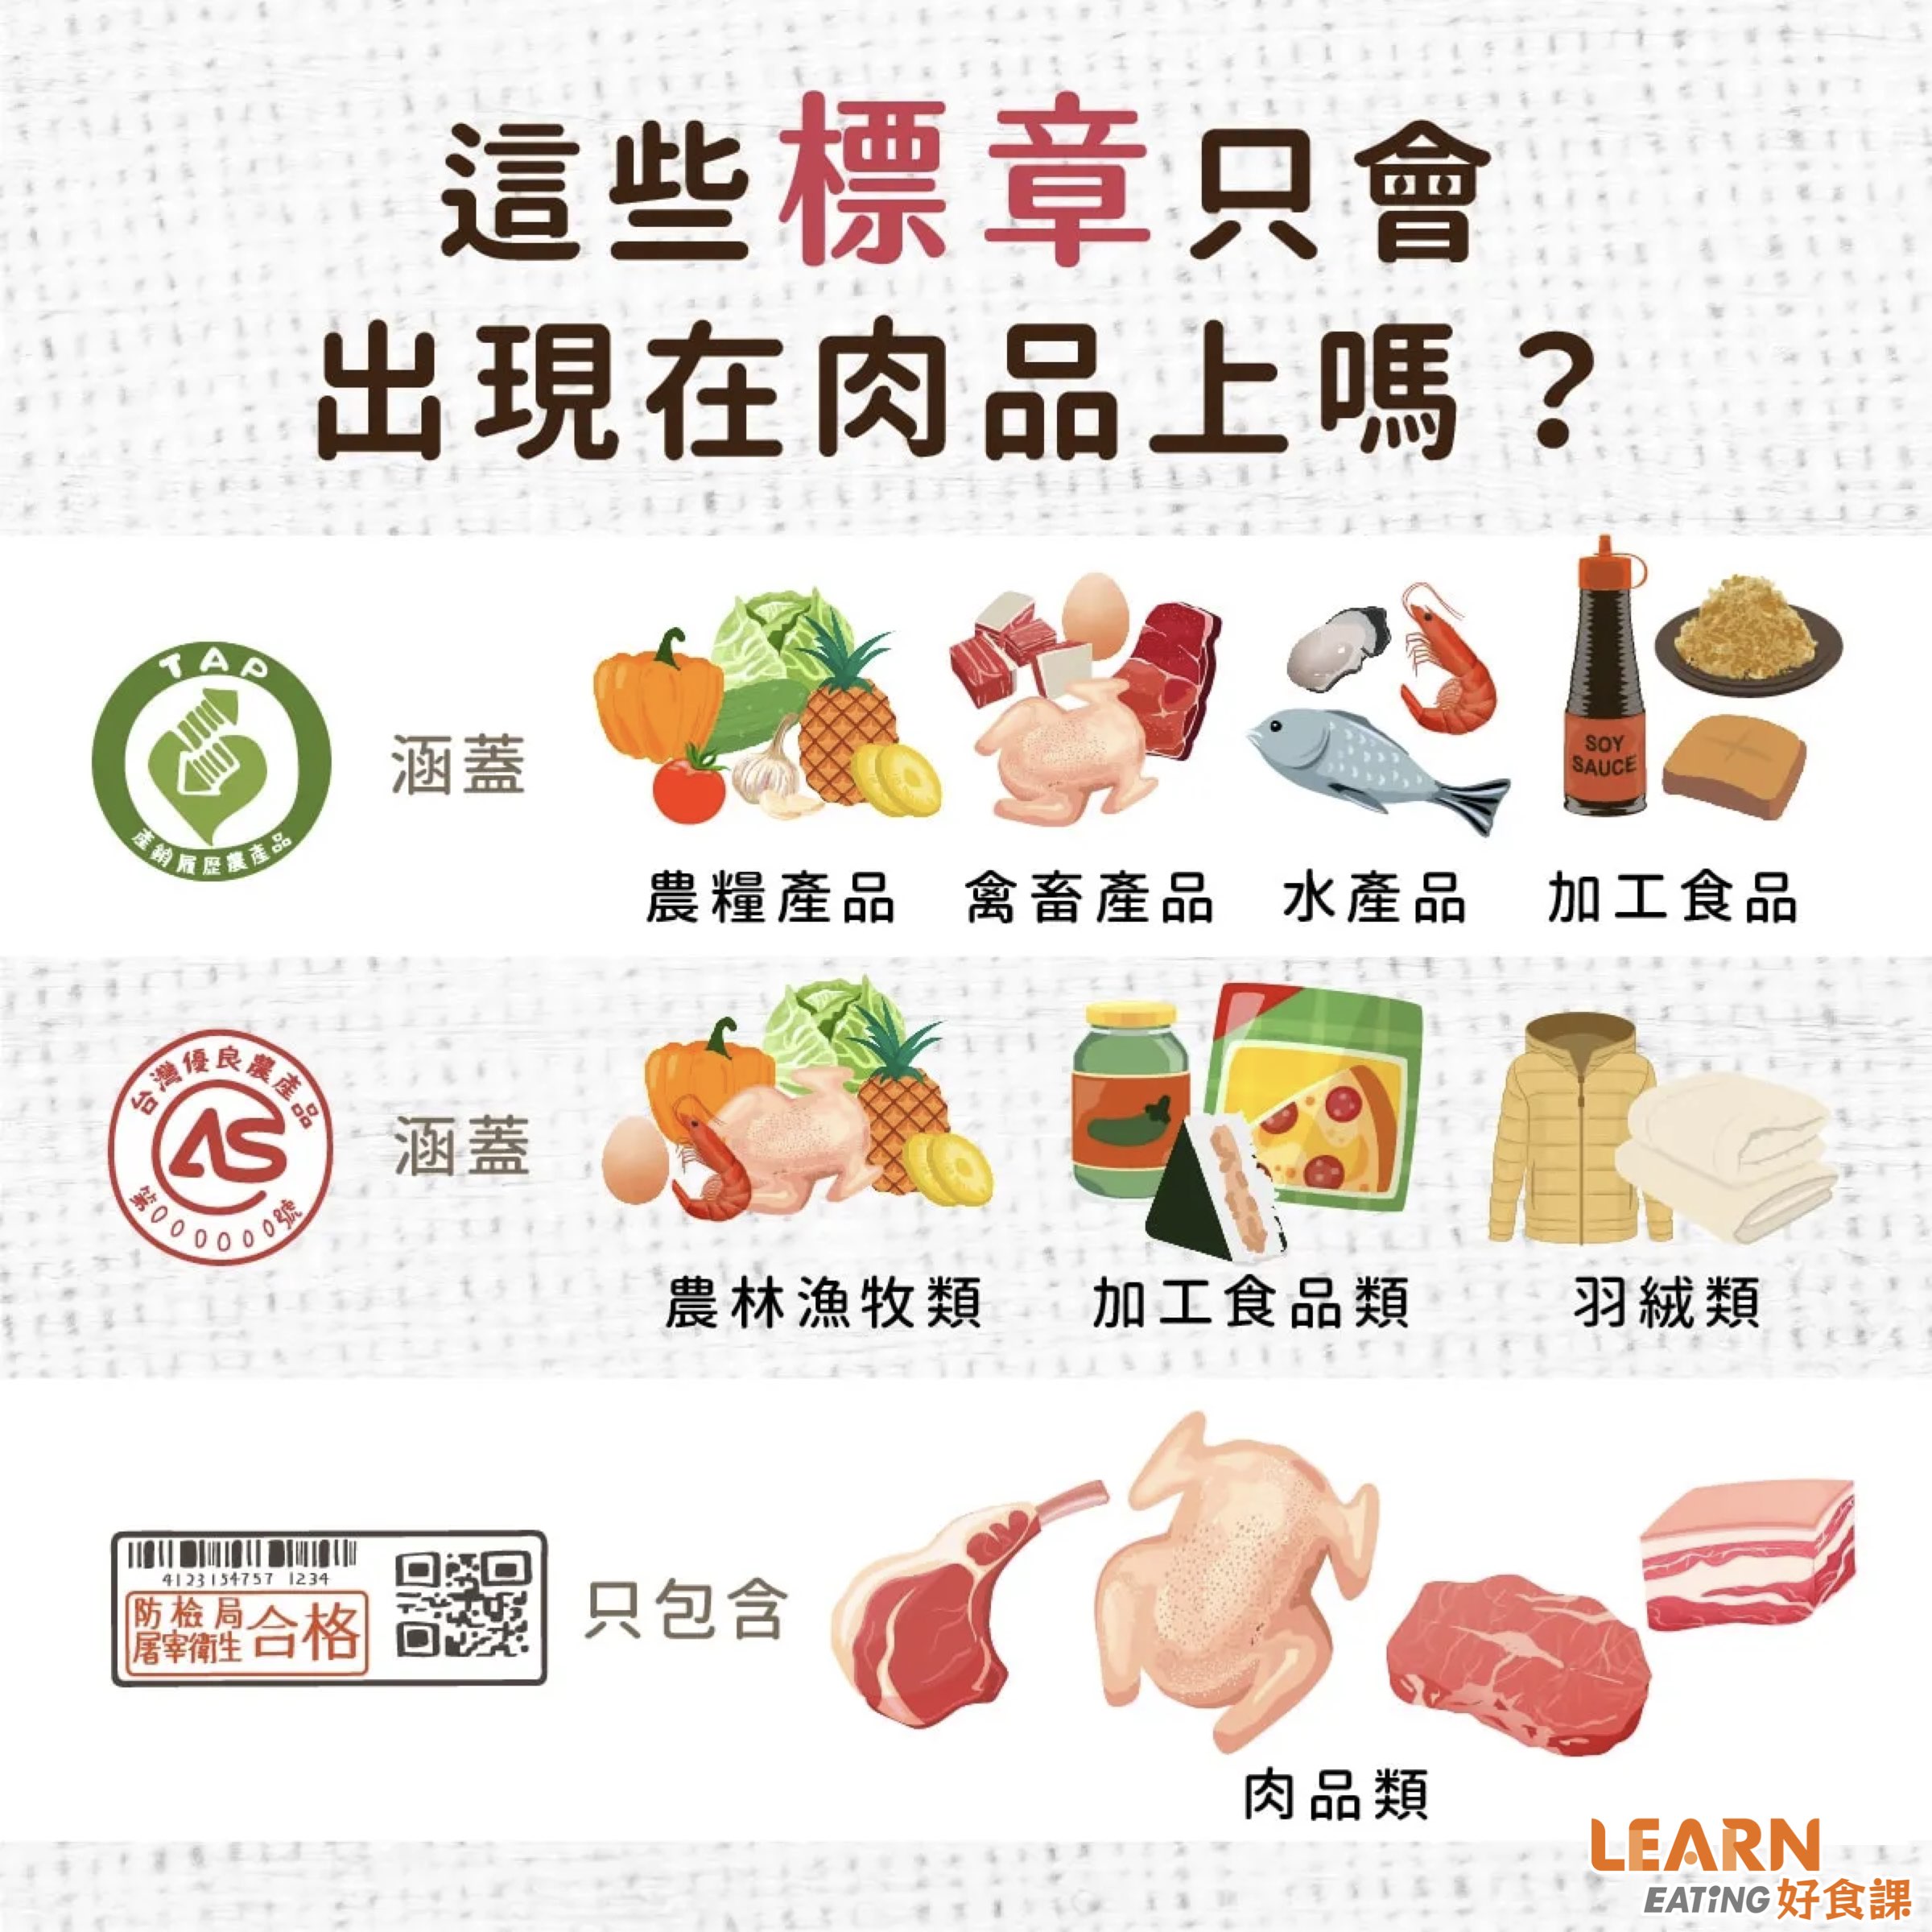 肉品標章-CAS-產銷履歷